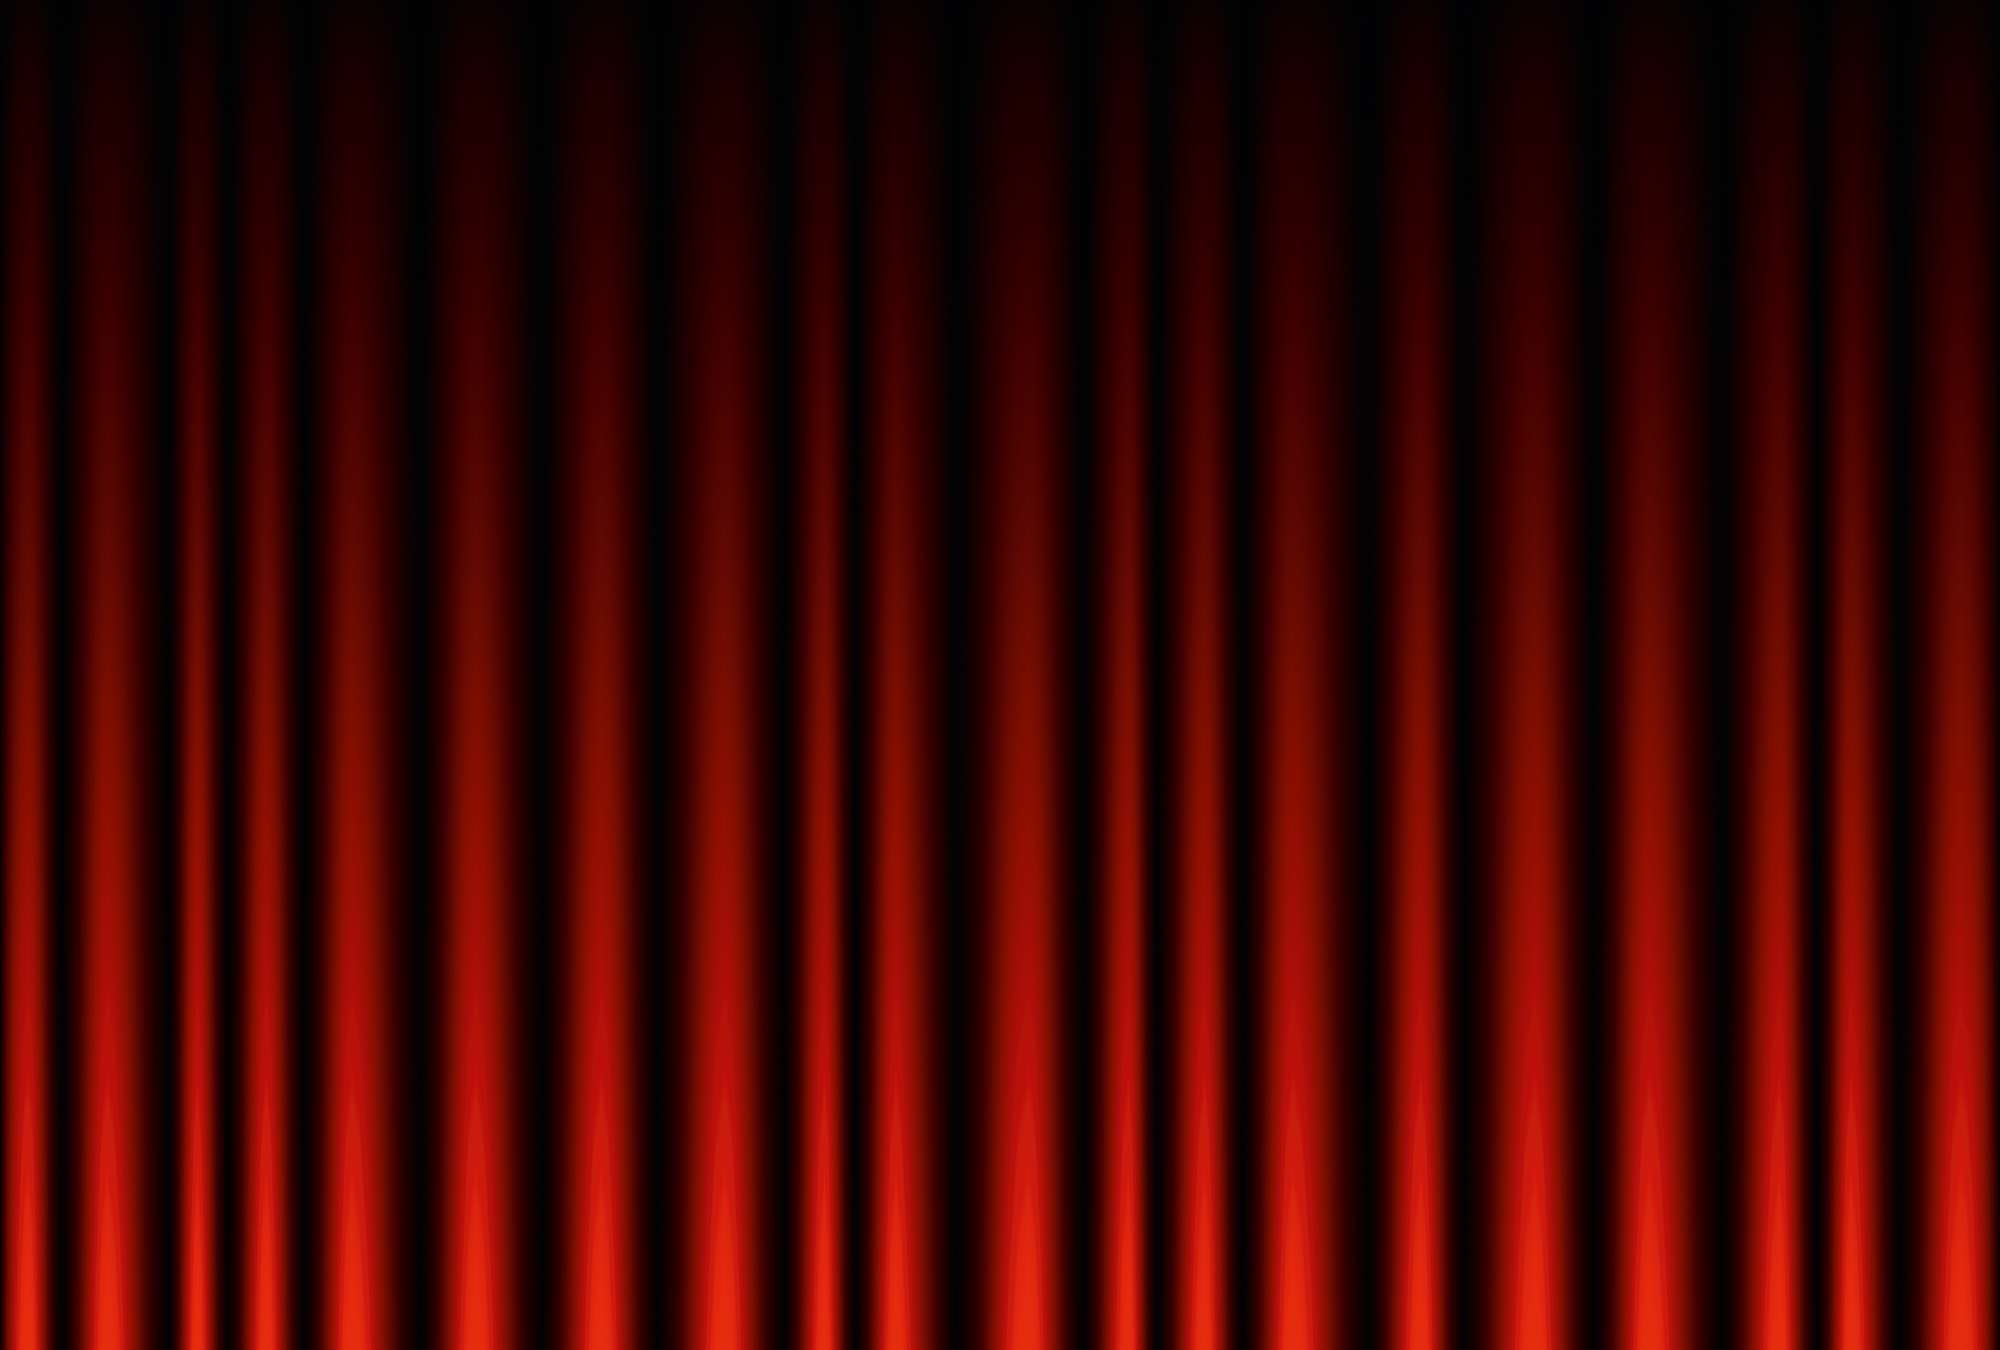             Mural de terciopelo rojo oscuro con cortina recta
        